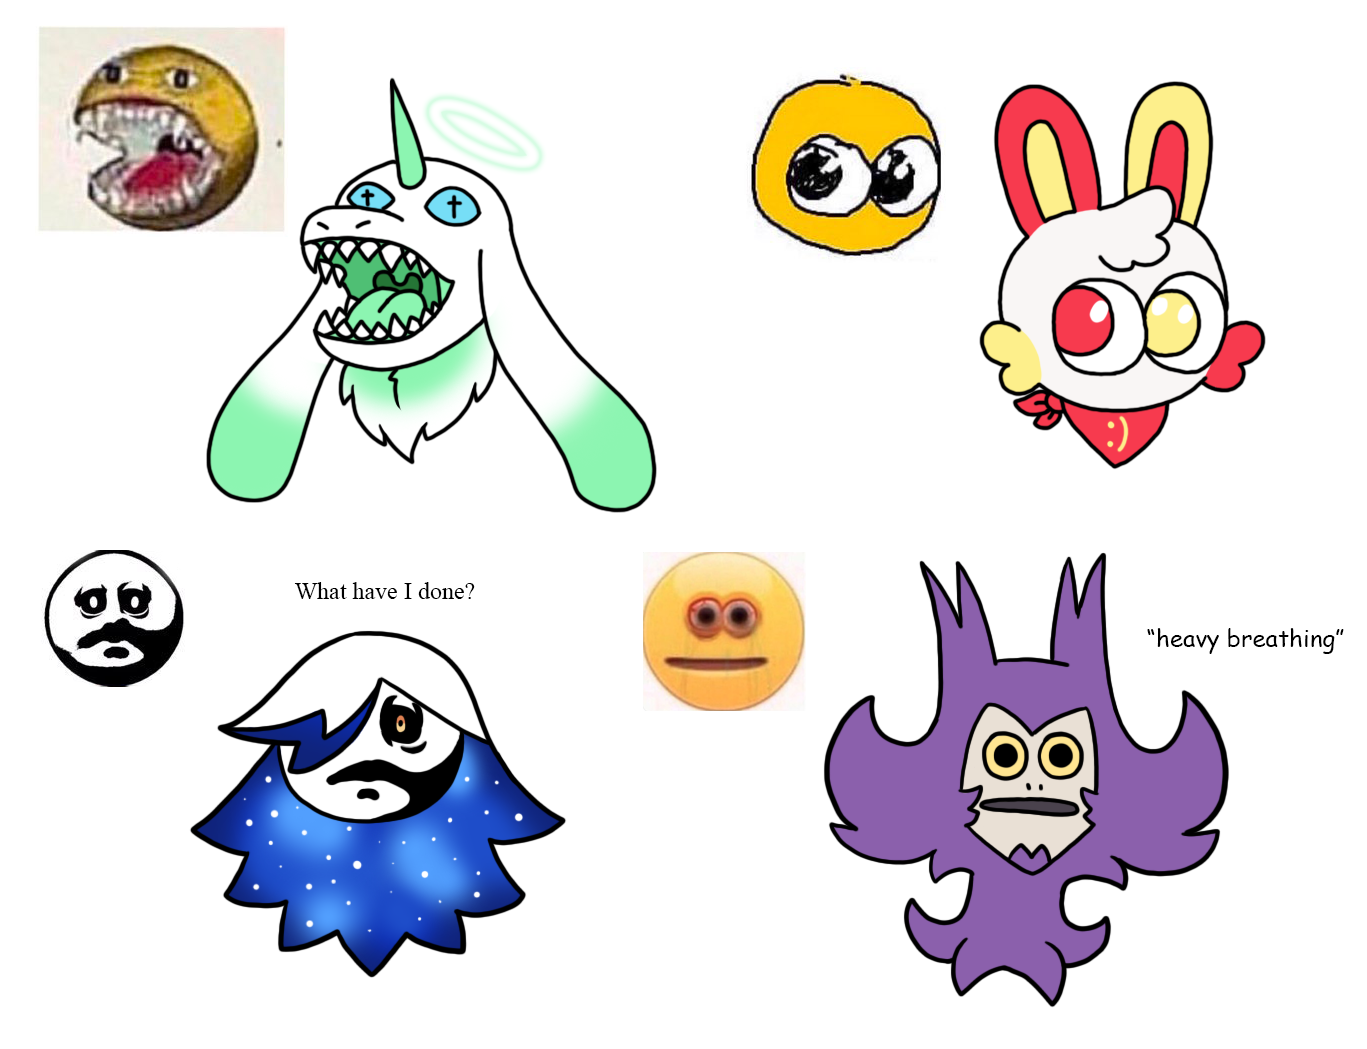 cursed emoji headcanon #1 ! by pikasnotfound on DeviantArt